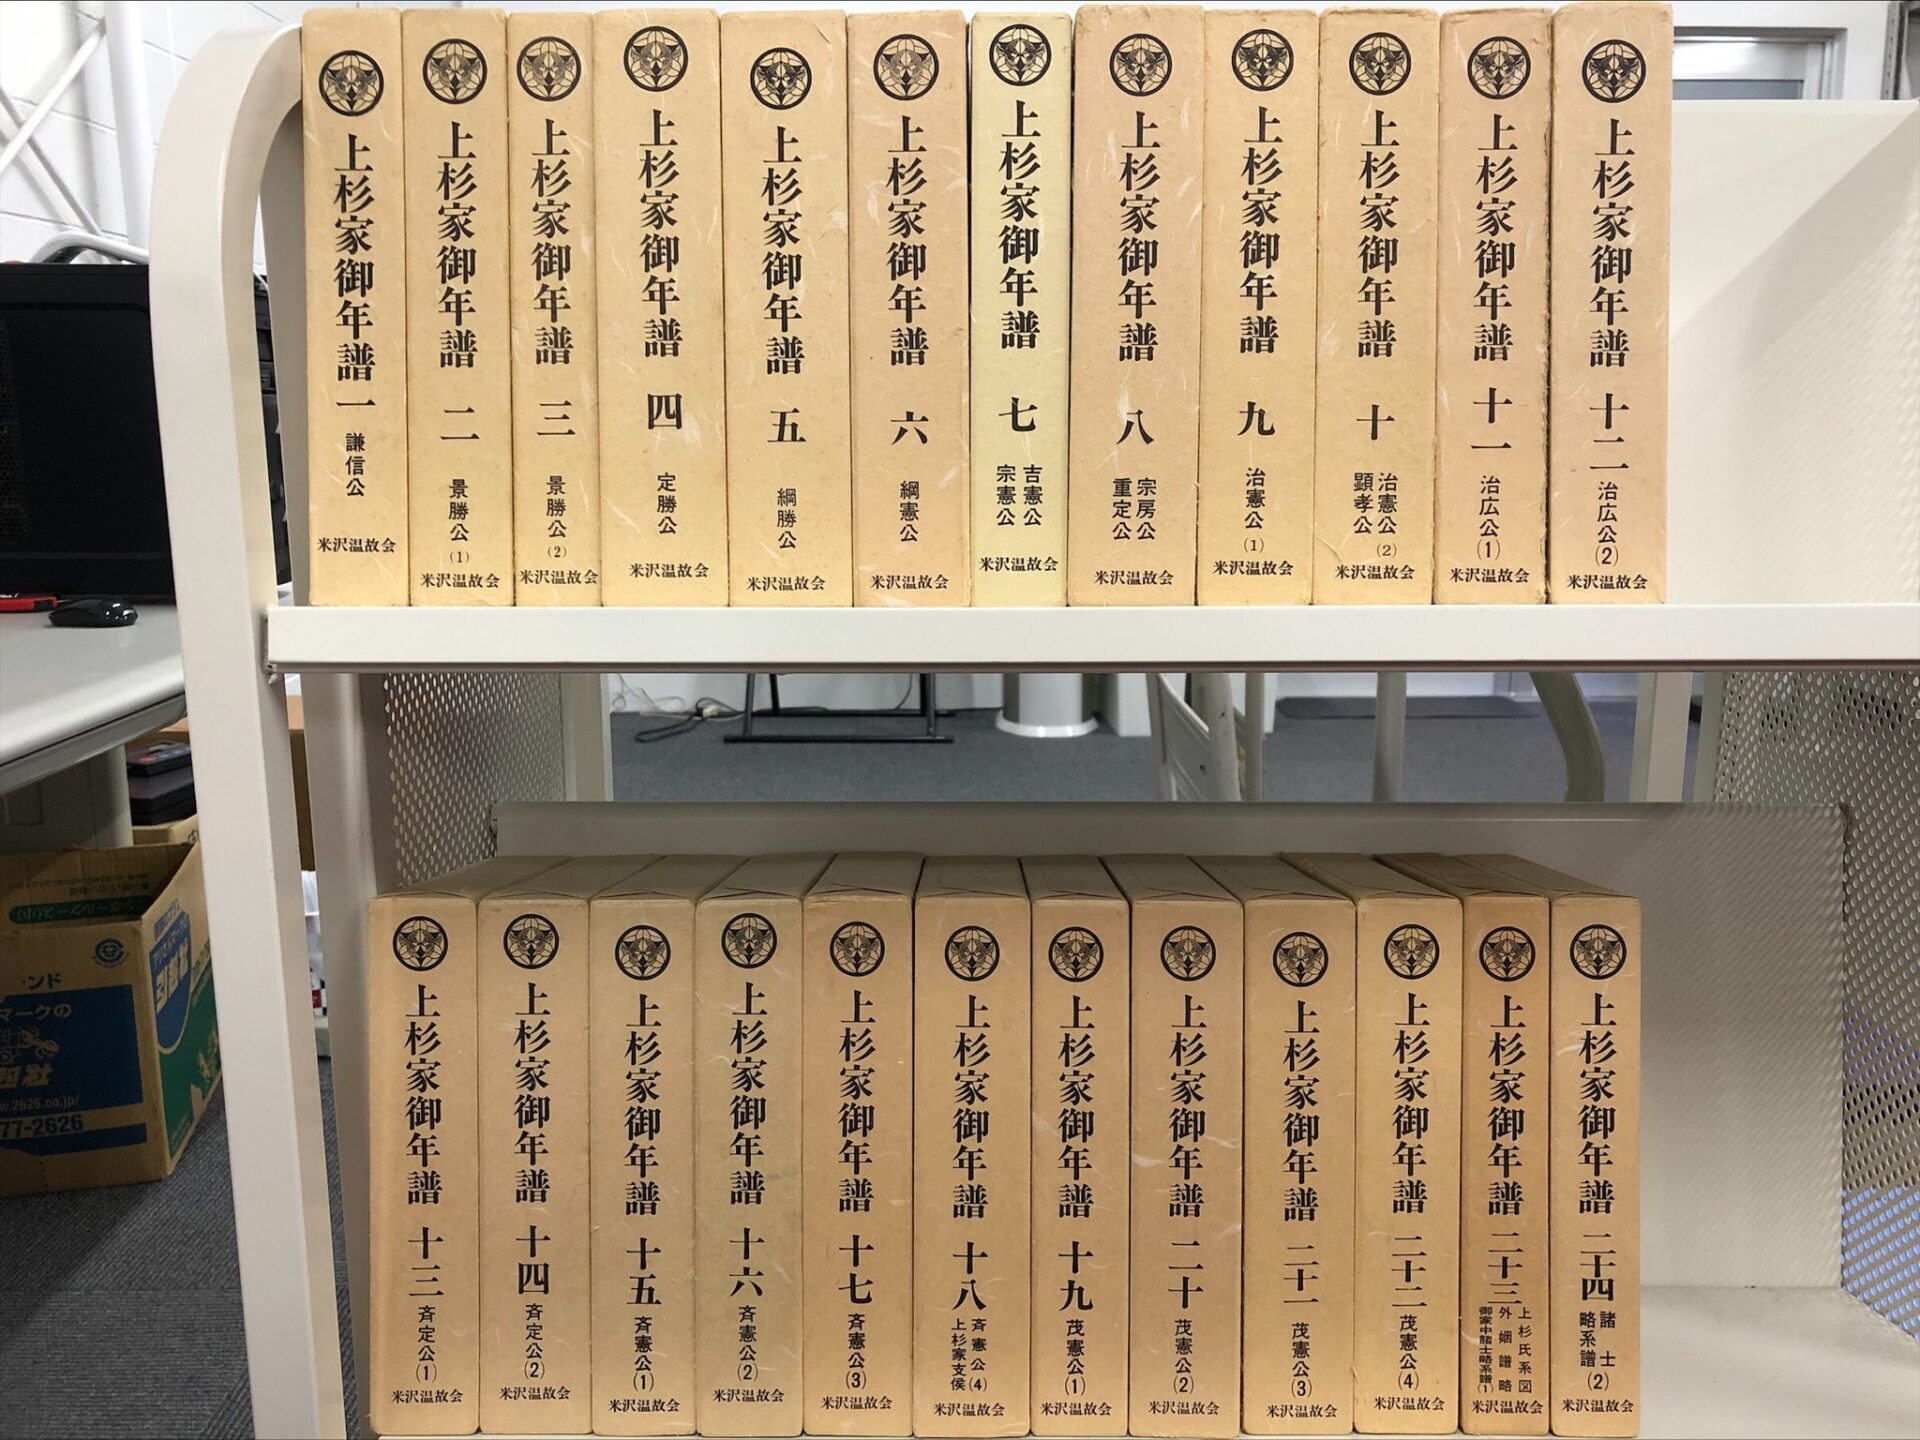 米沢温故会『上杉家御年譜』全24巻を古書買取査定